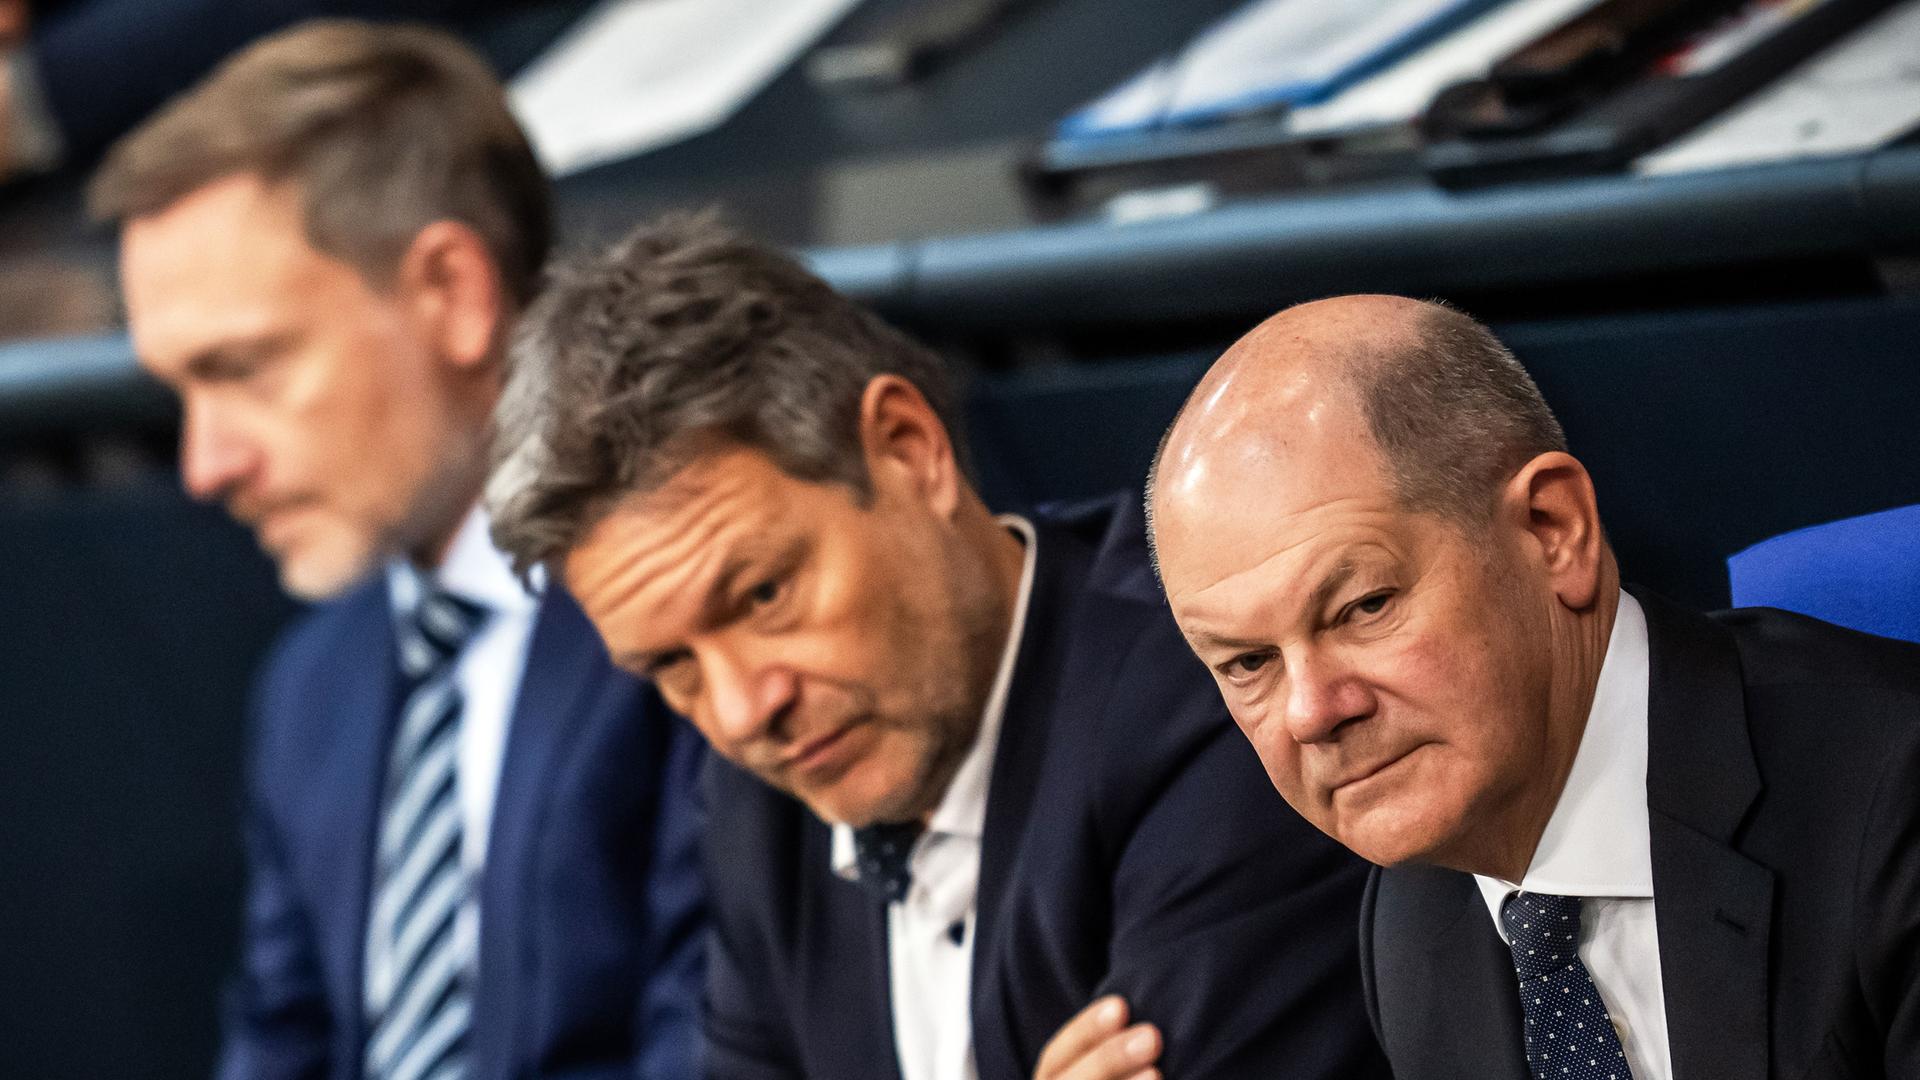 Bundeskanzler Olaf Scholz (SPD, r), verfolgt neben Robert Habeck (Bündnis 90/Die Grünen, M), Bundesminister für Wirtschaft und Klimaschutz, und Christian Lindner (FDP), Bundesminister der Finanzen, die Debatte nach einer Regierungserklärung zur Haushaltslage im Bundestag.